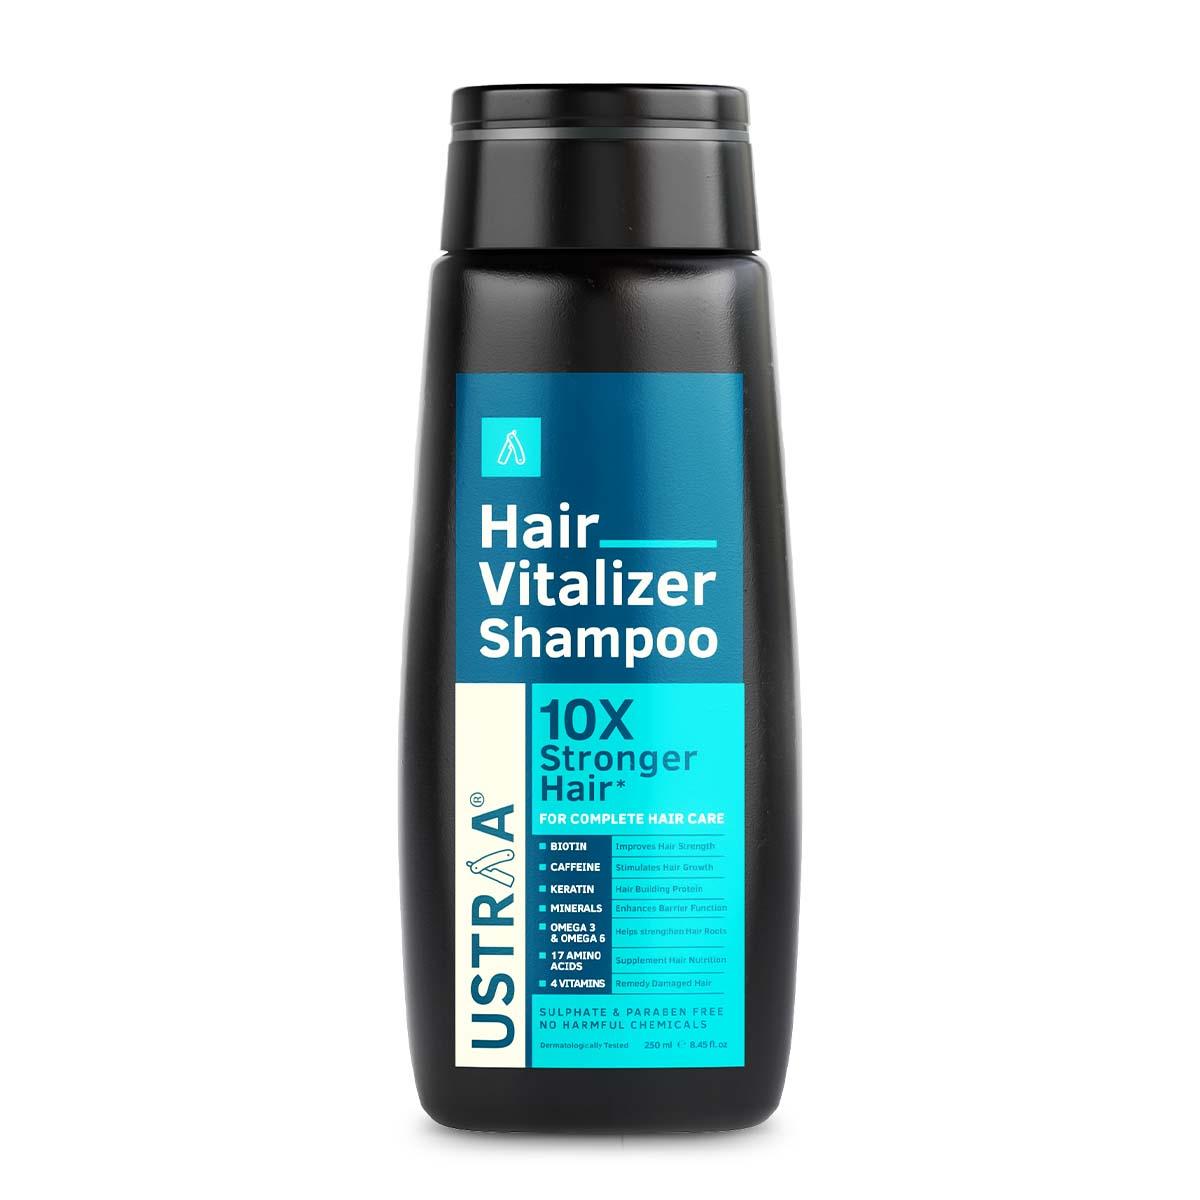 Hair Vitalizer Shampoo - 250 ml